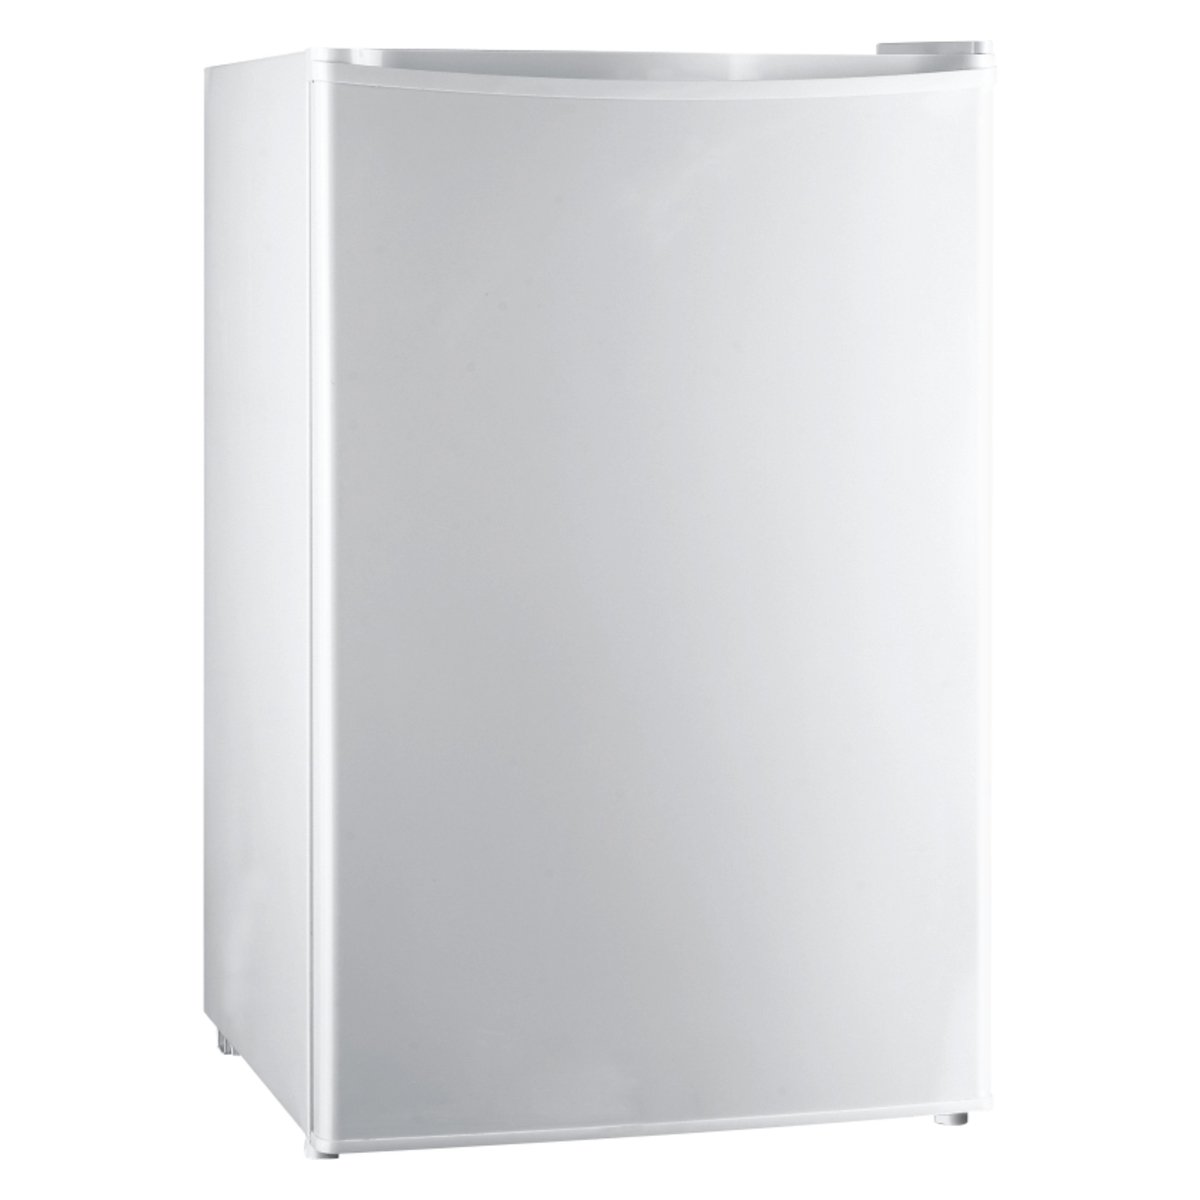 TCL Single Door Refrigerator TM-153R 153Ltr